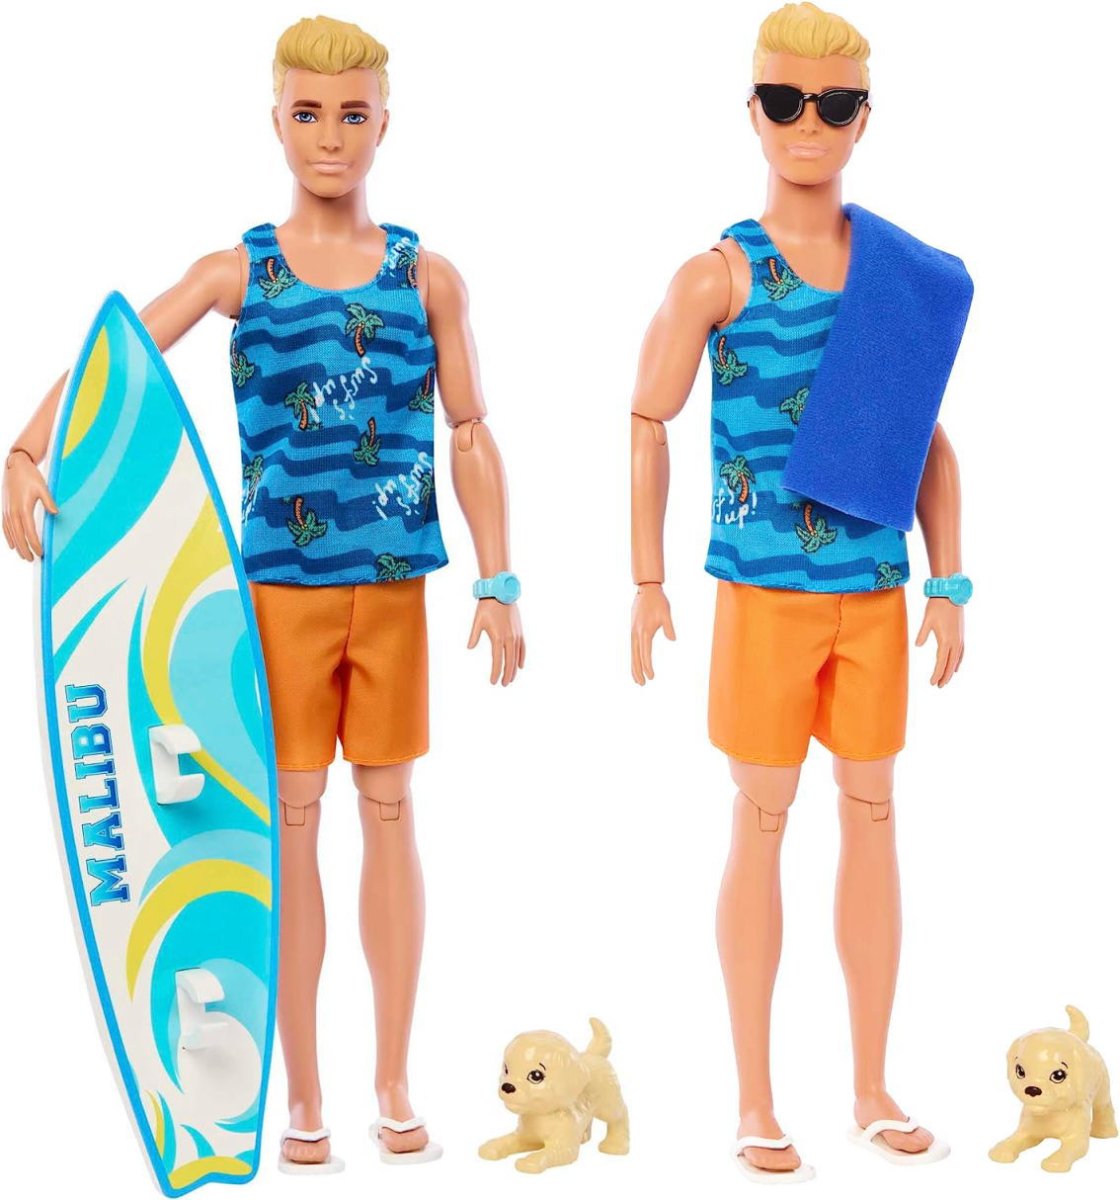 バービー ケン サーフボードセット サーフィン ドール 人形 マリブ 子犬 アクセリー付き Ken Surfer MALIBU Surfboard -  FAR-OUT